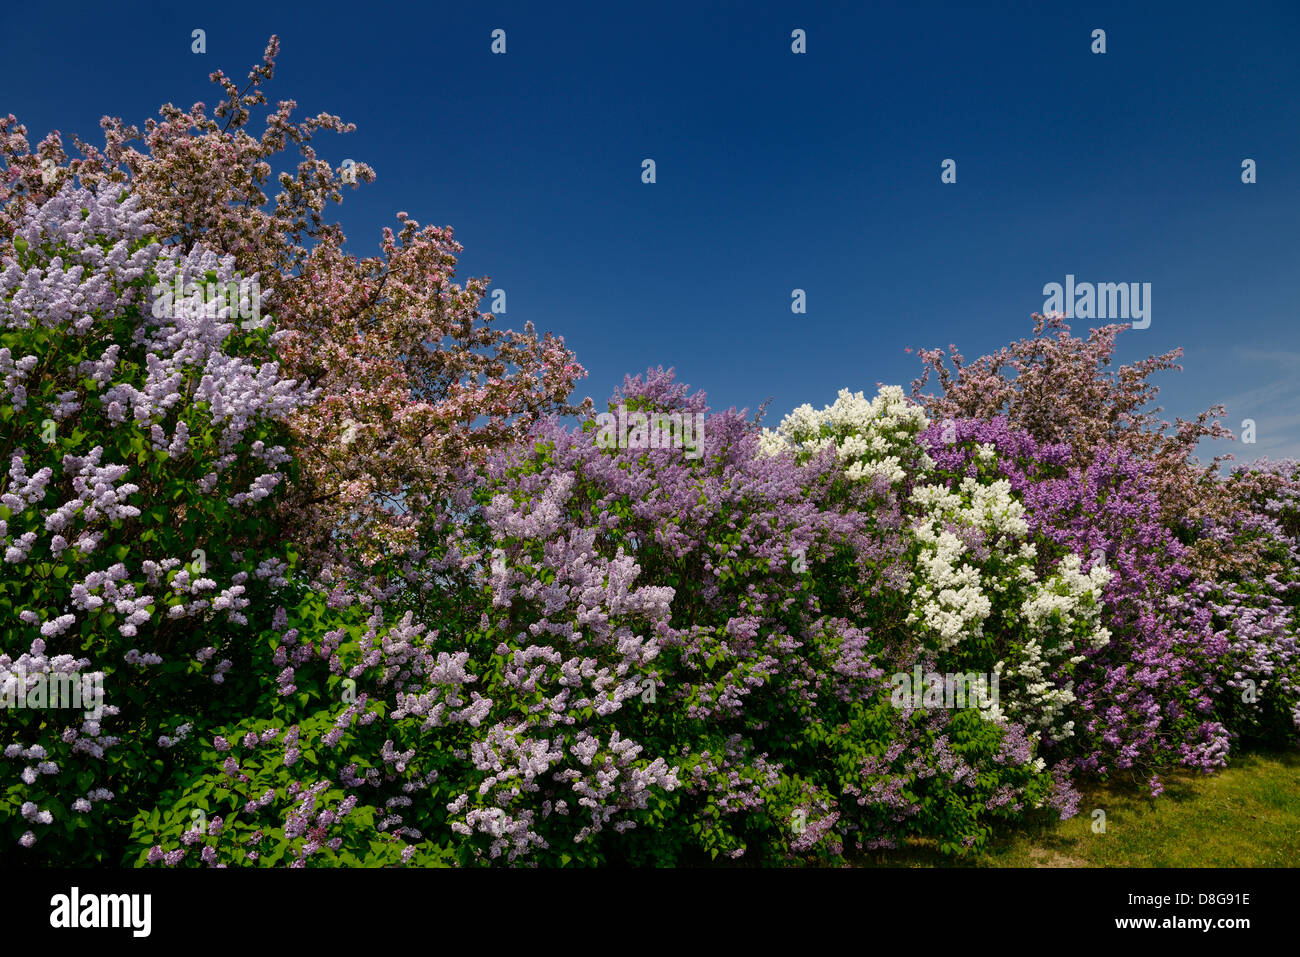 Bordure de buissons de lilas commun foisonnent à côté de pommetiers en fleurs rose au printemps toronto canada Banque D'Images